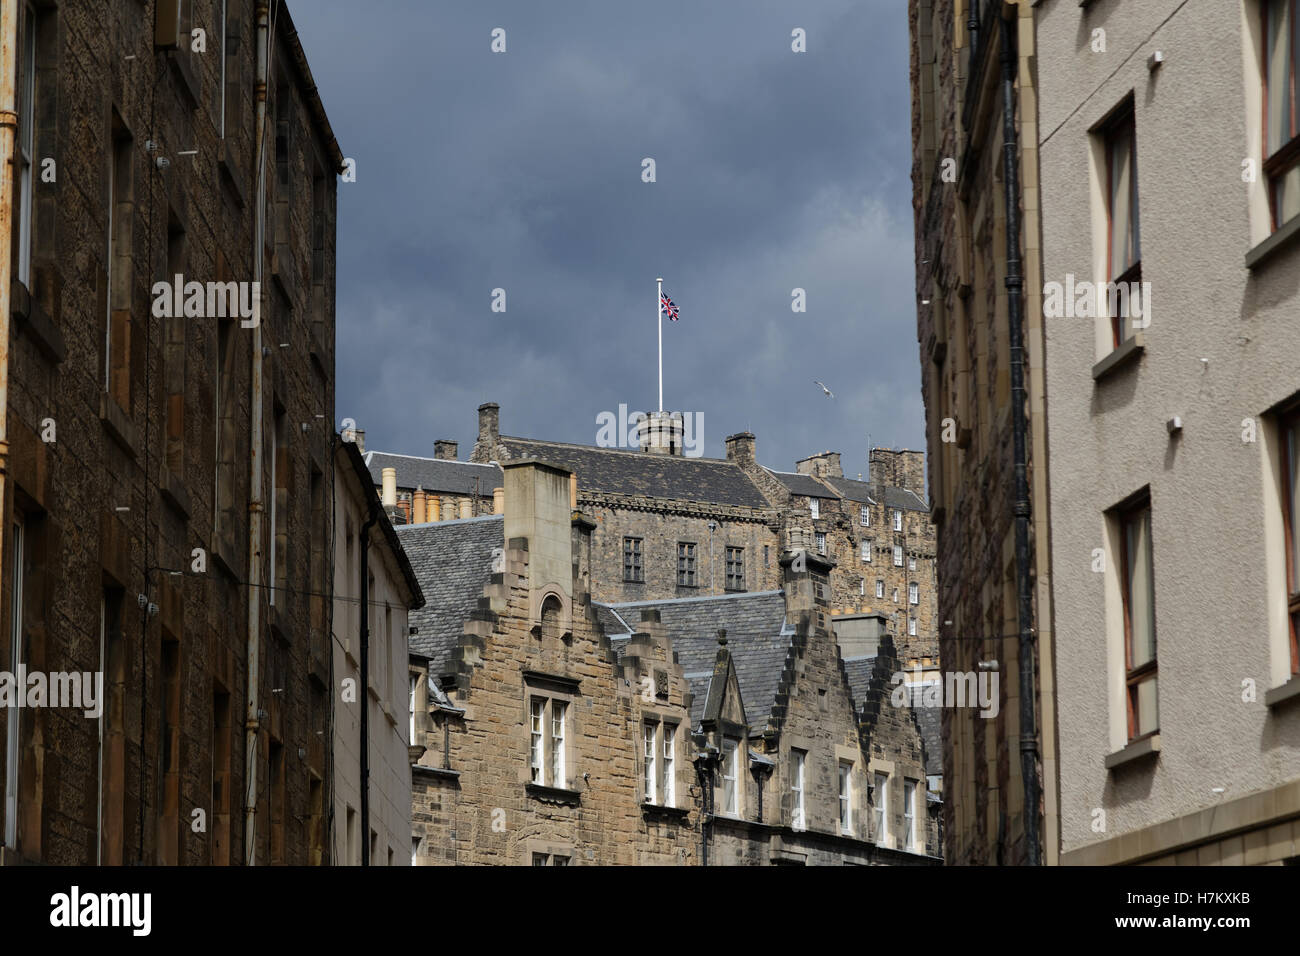 Des scènes de l'Edinburgh Festival Fringe festival de rue 2015 parrainé vierge Edinburgh, Ecosse, Royaume-Uni Banque D'Images